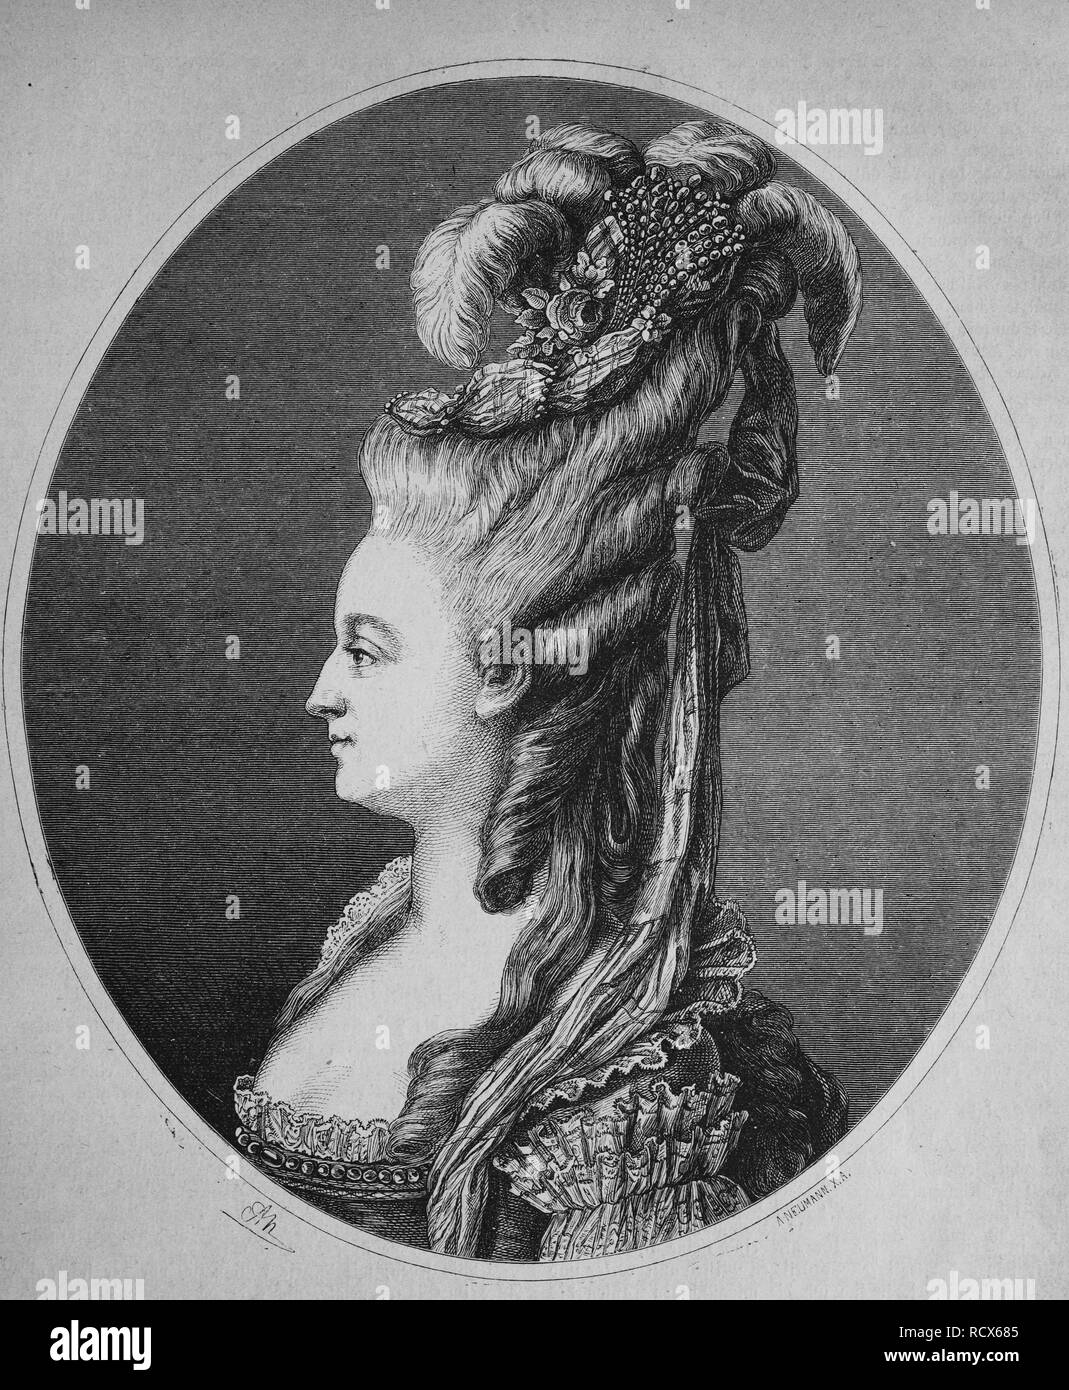 Marie Antoinette, 1755 - 1793, l'archiduchesse d'Autriche, princesse de Hongrie, de Bohême et de Toscane, gravure sur bois, vers 1880 Banque D'Images